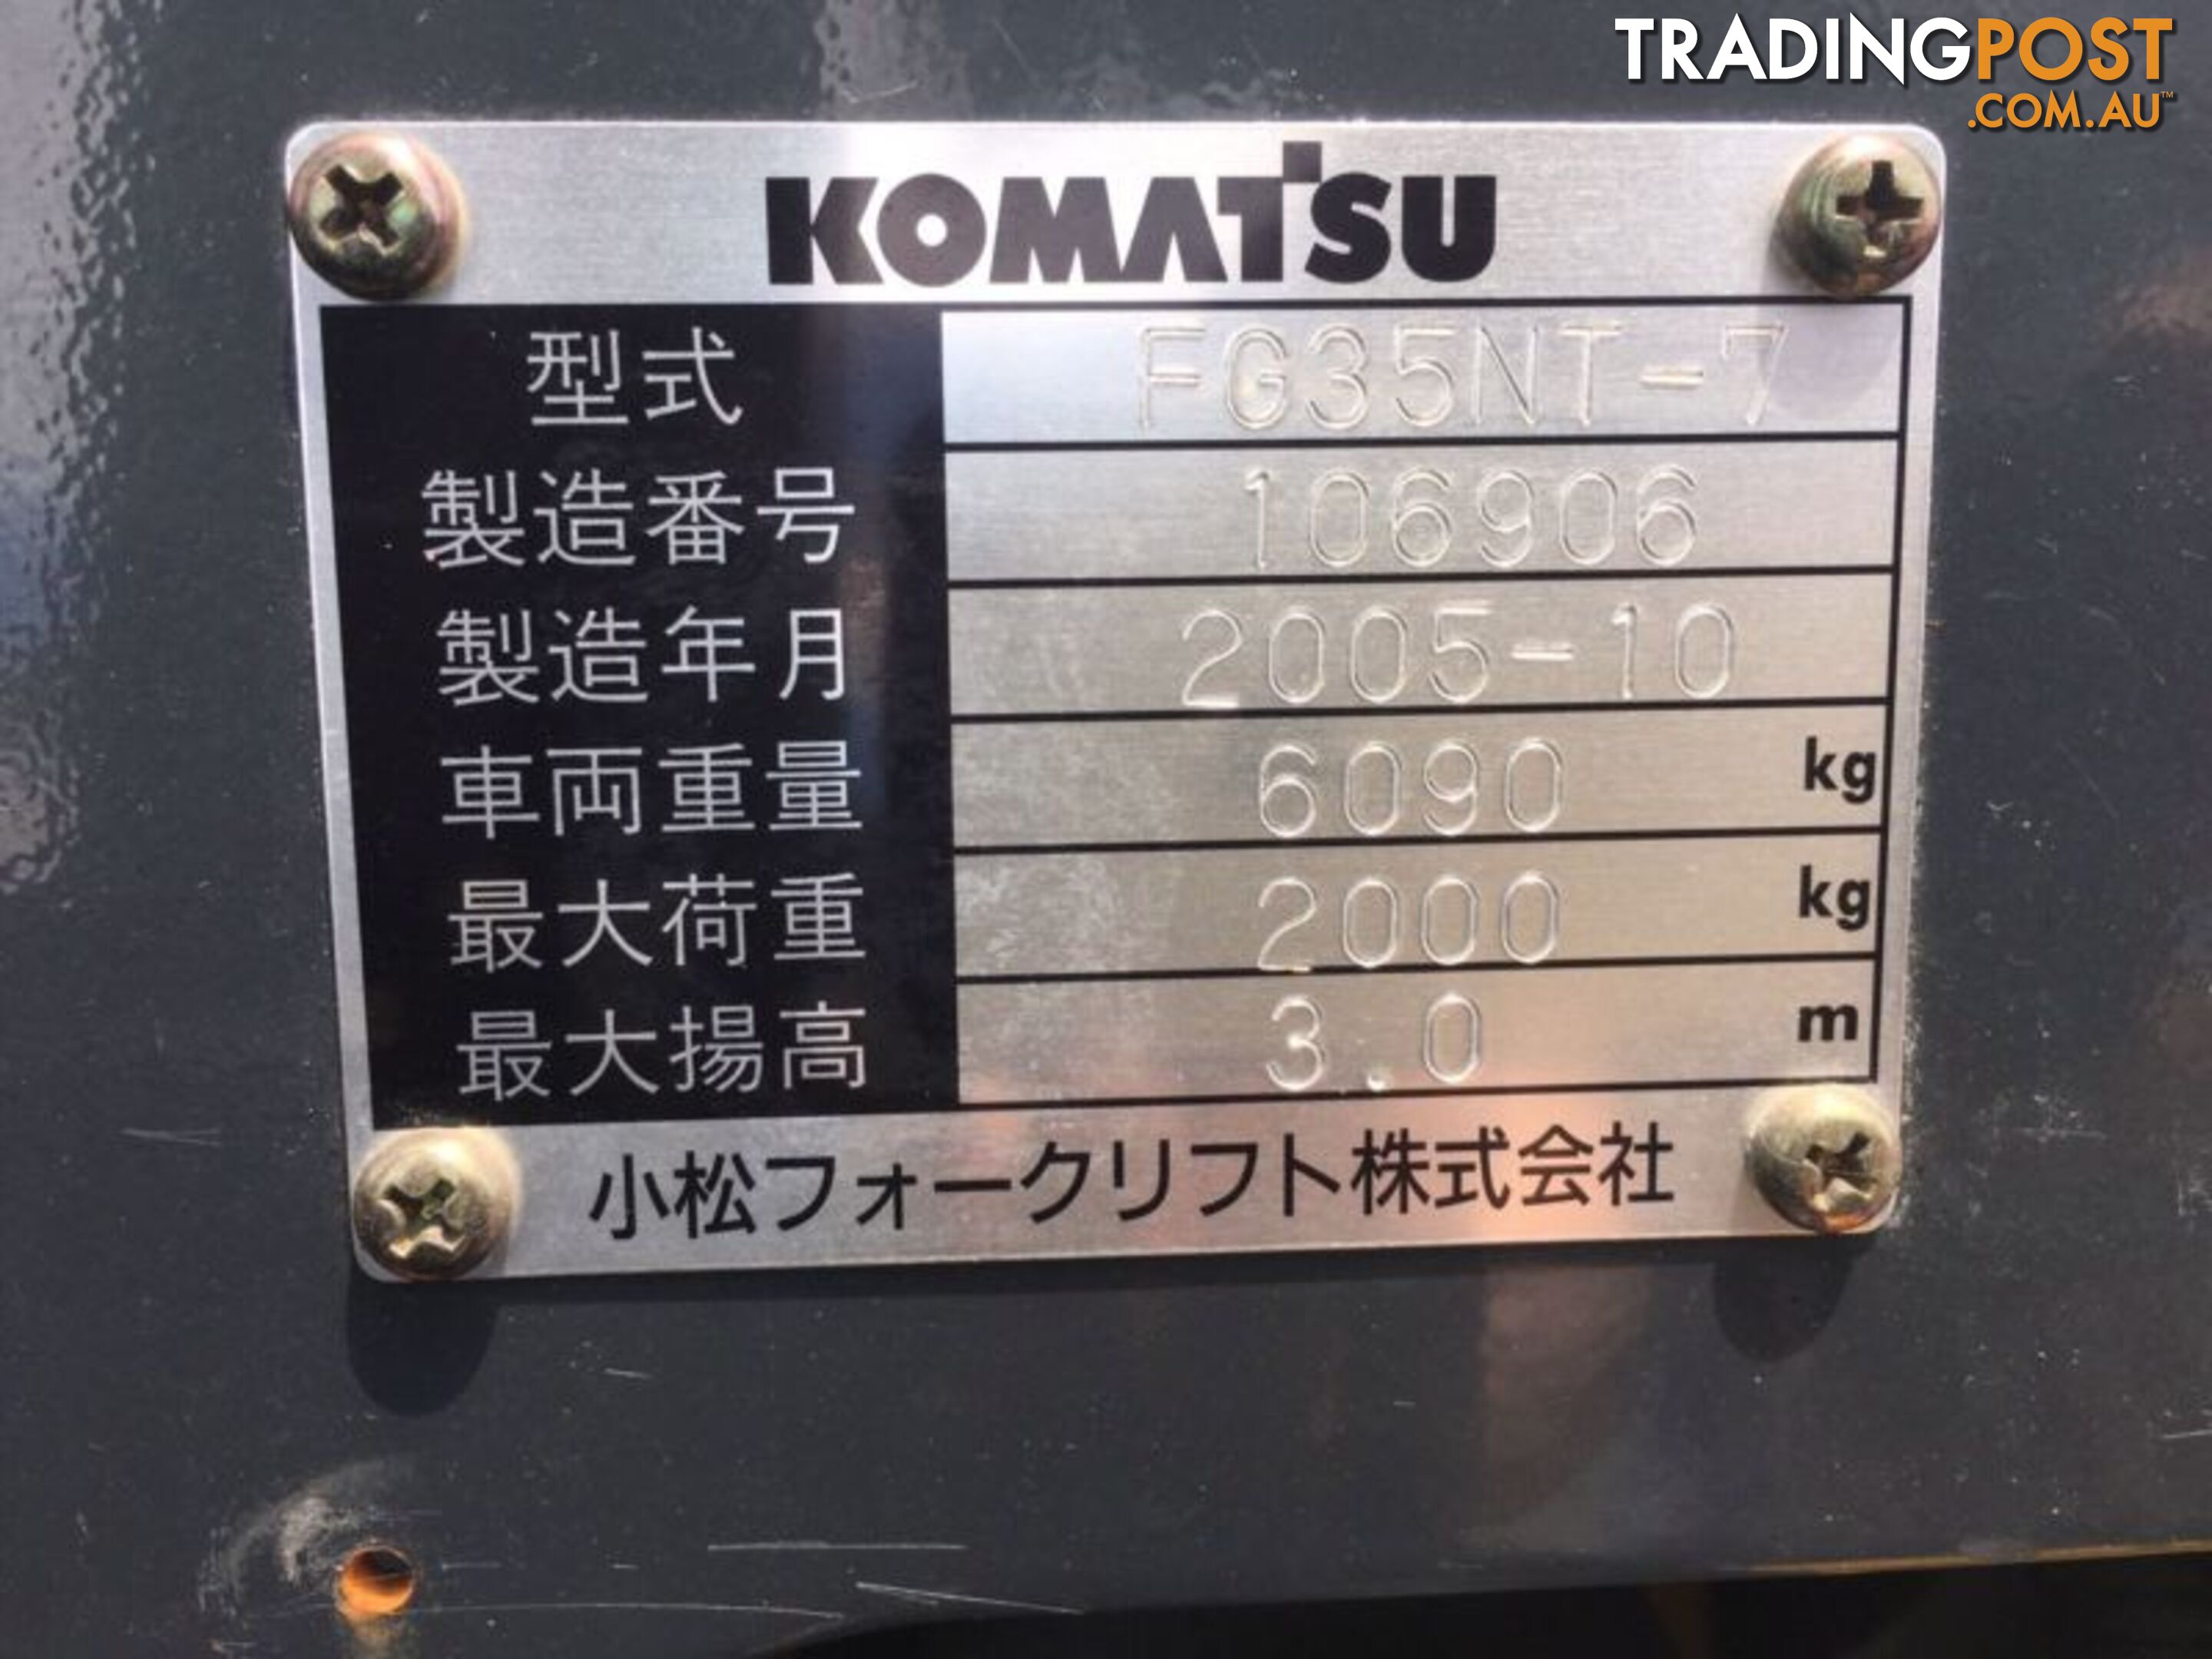 Komatsu fork lift petrol 6 cyl